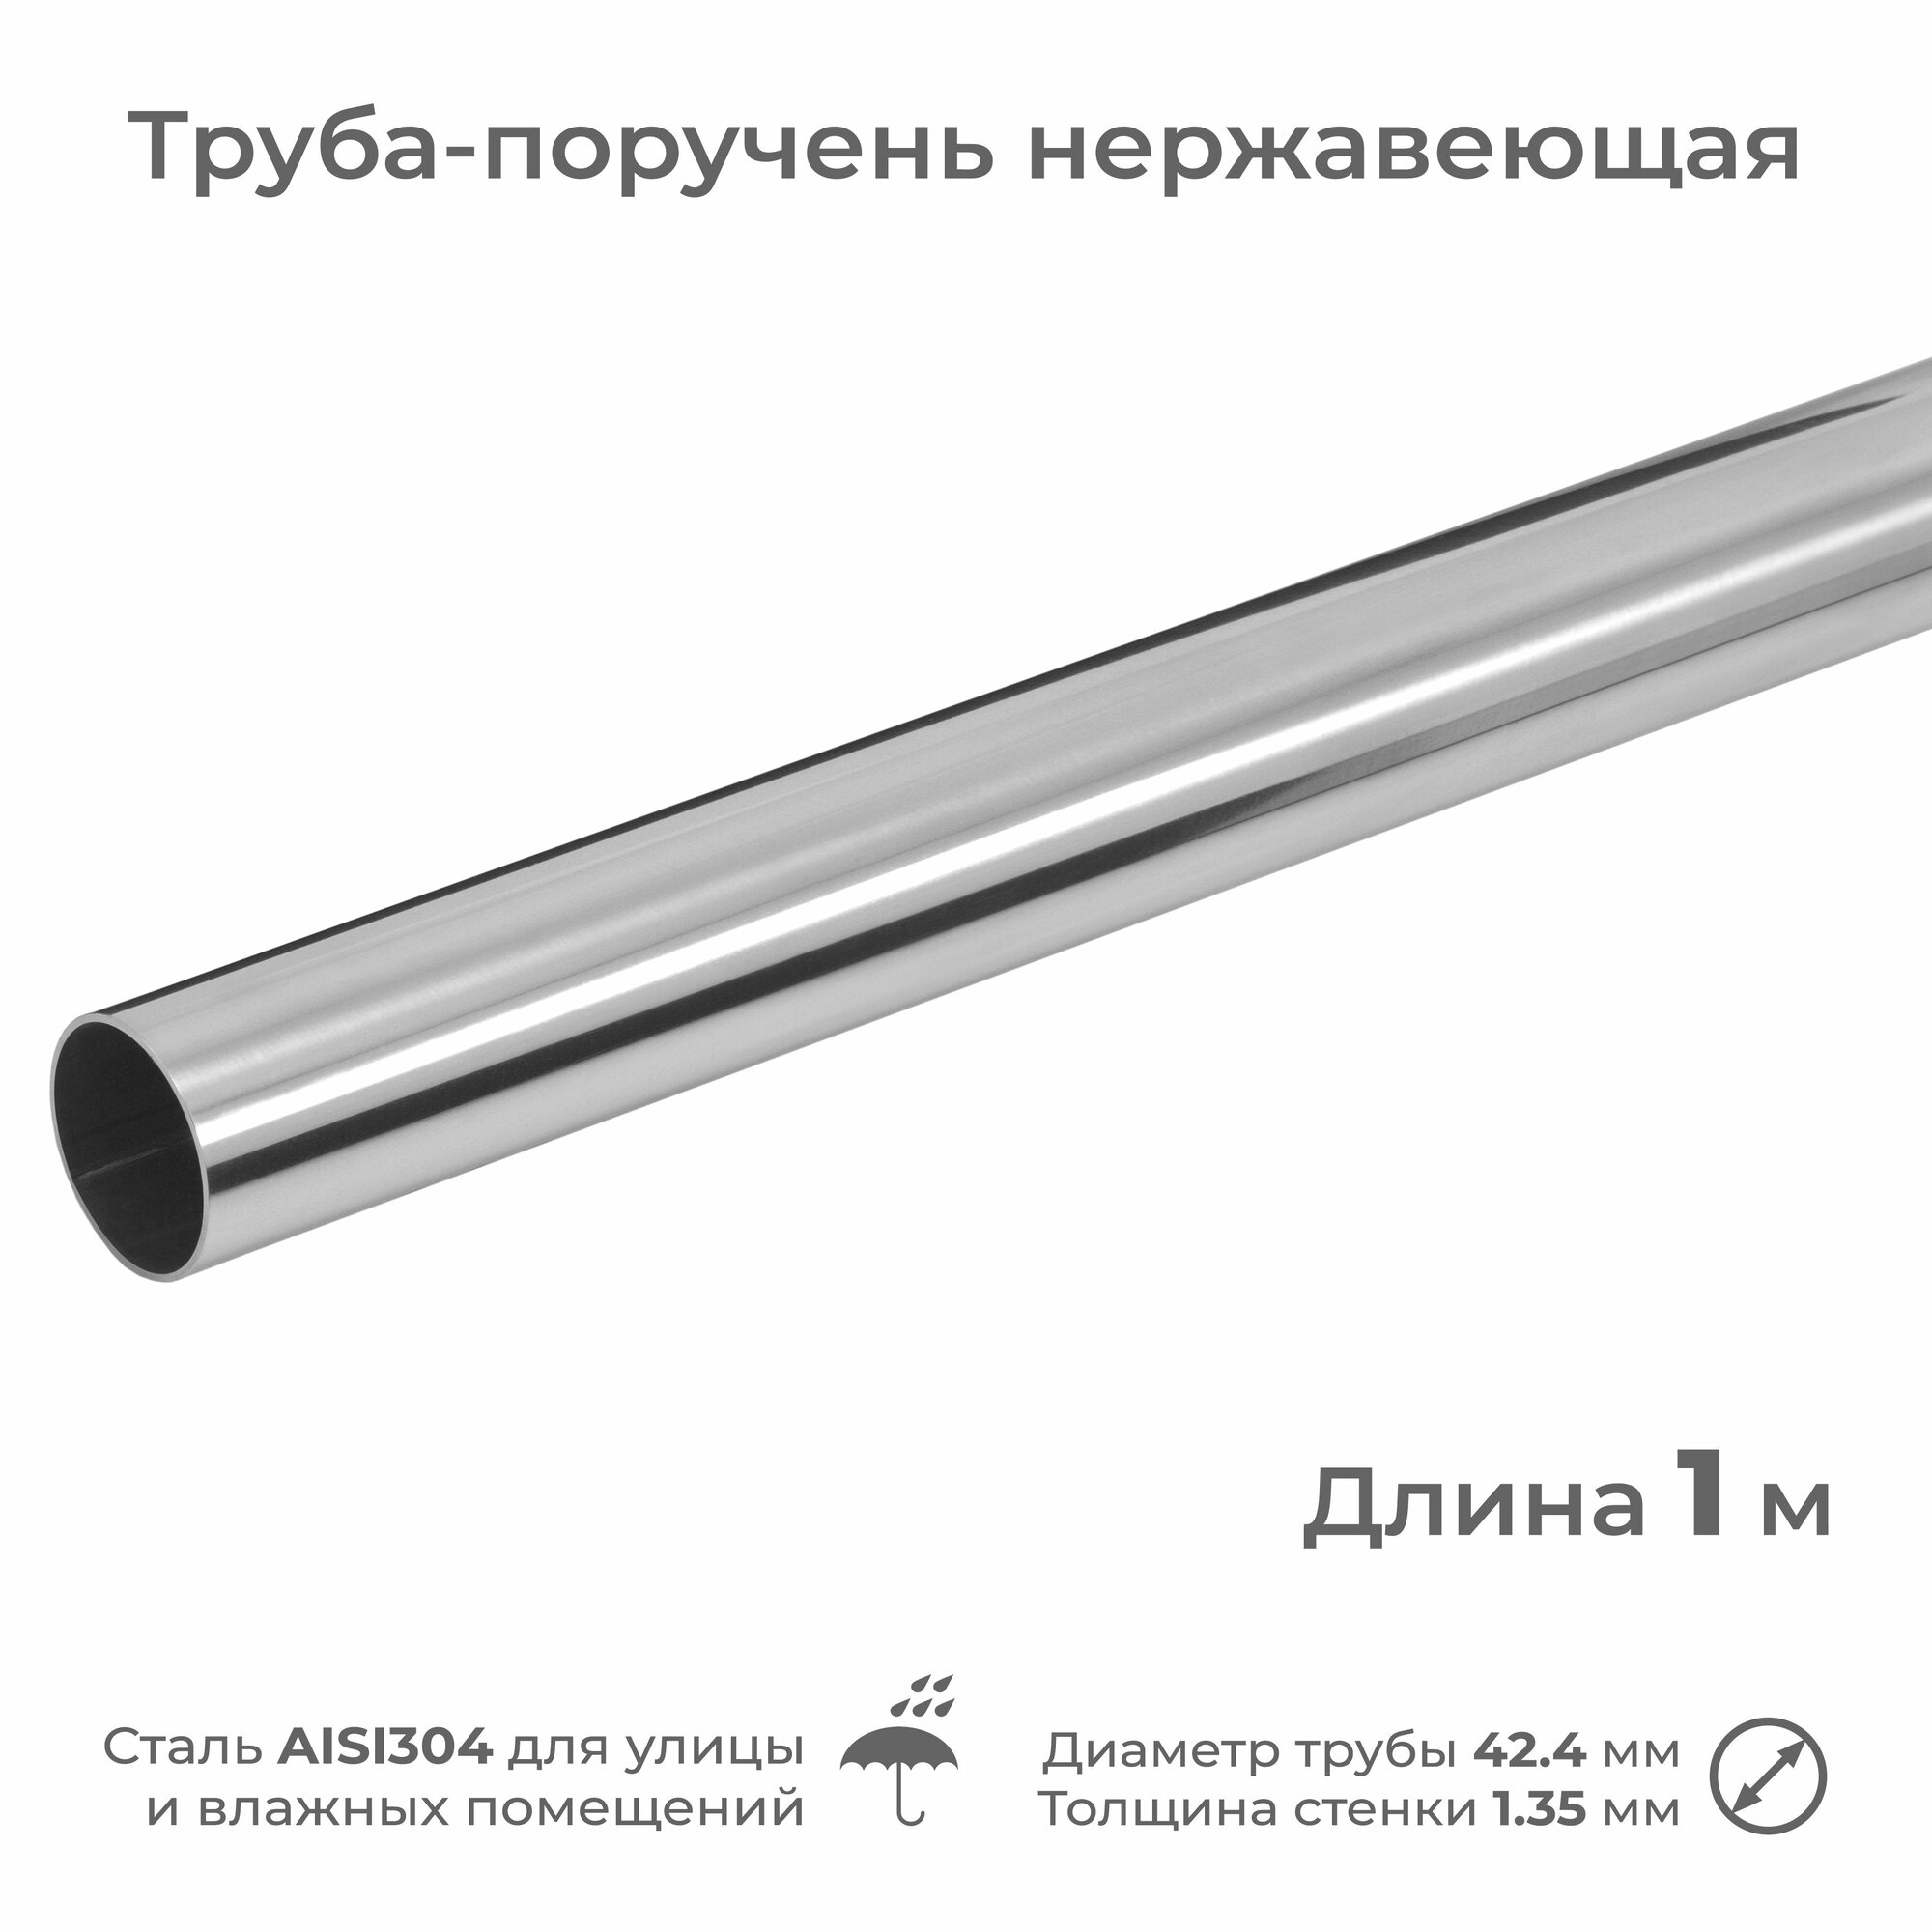 Труба-поручень из нержавеющей стали AISI304, диаметр 42.4 мм, длина 1 м